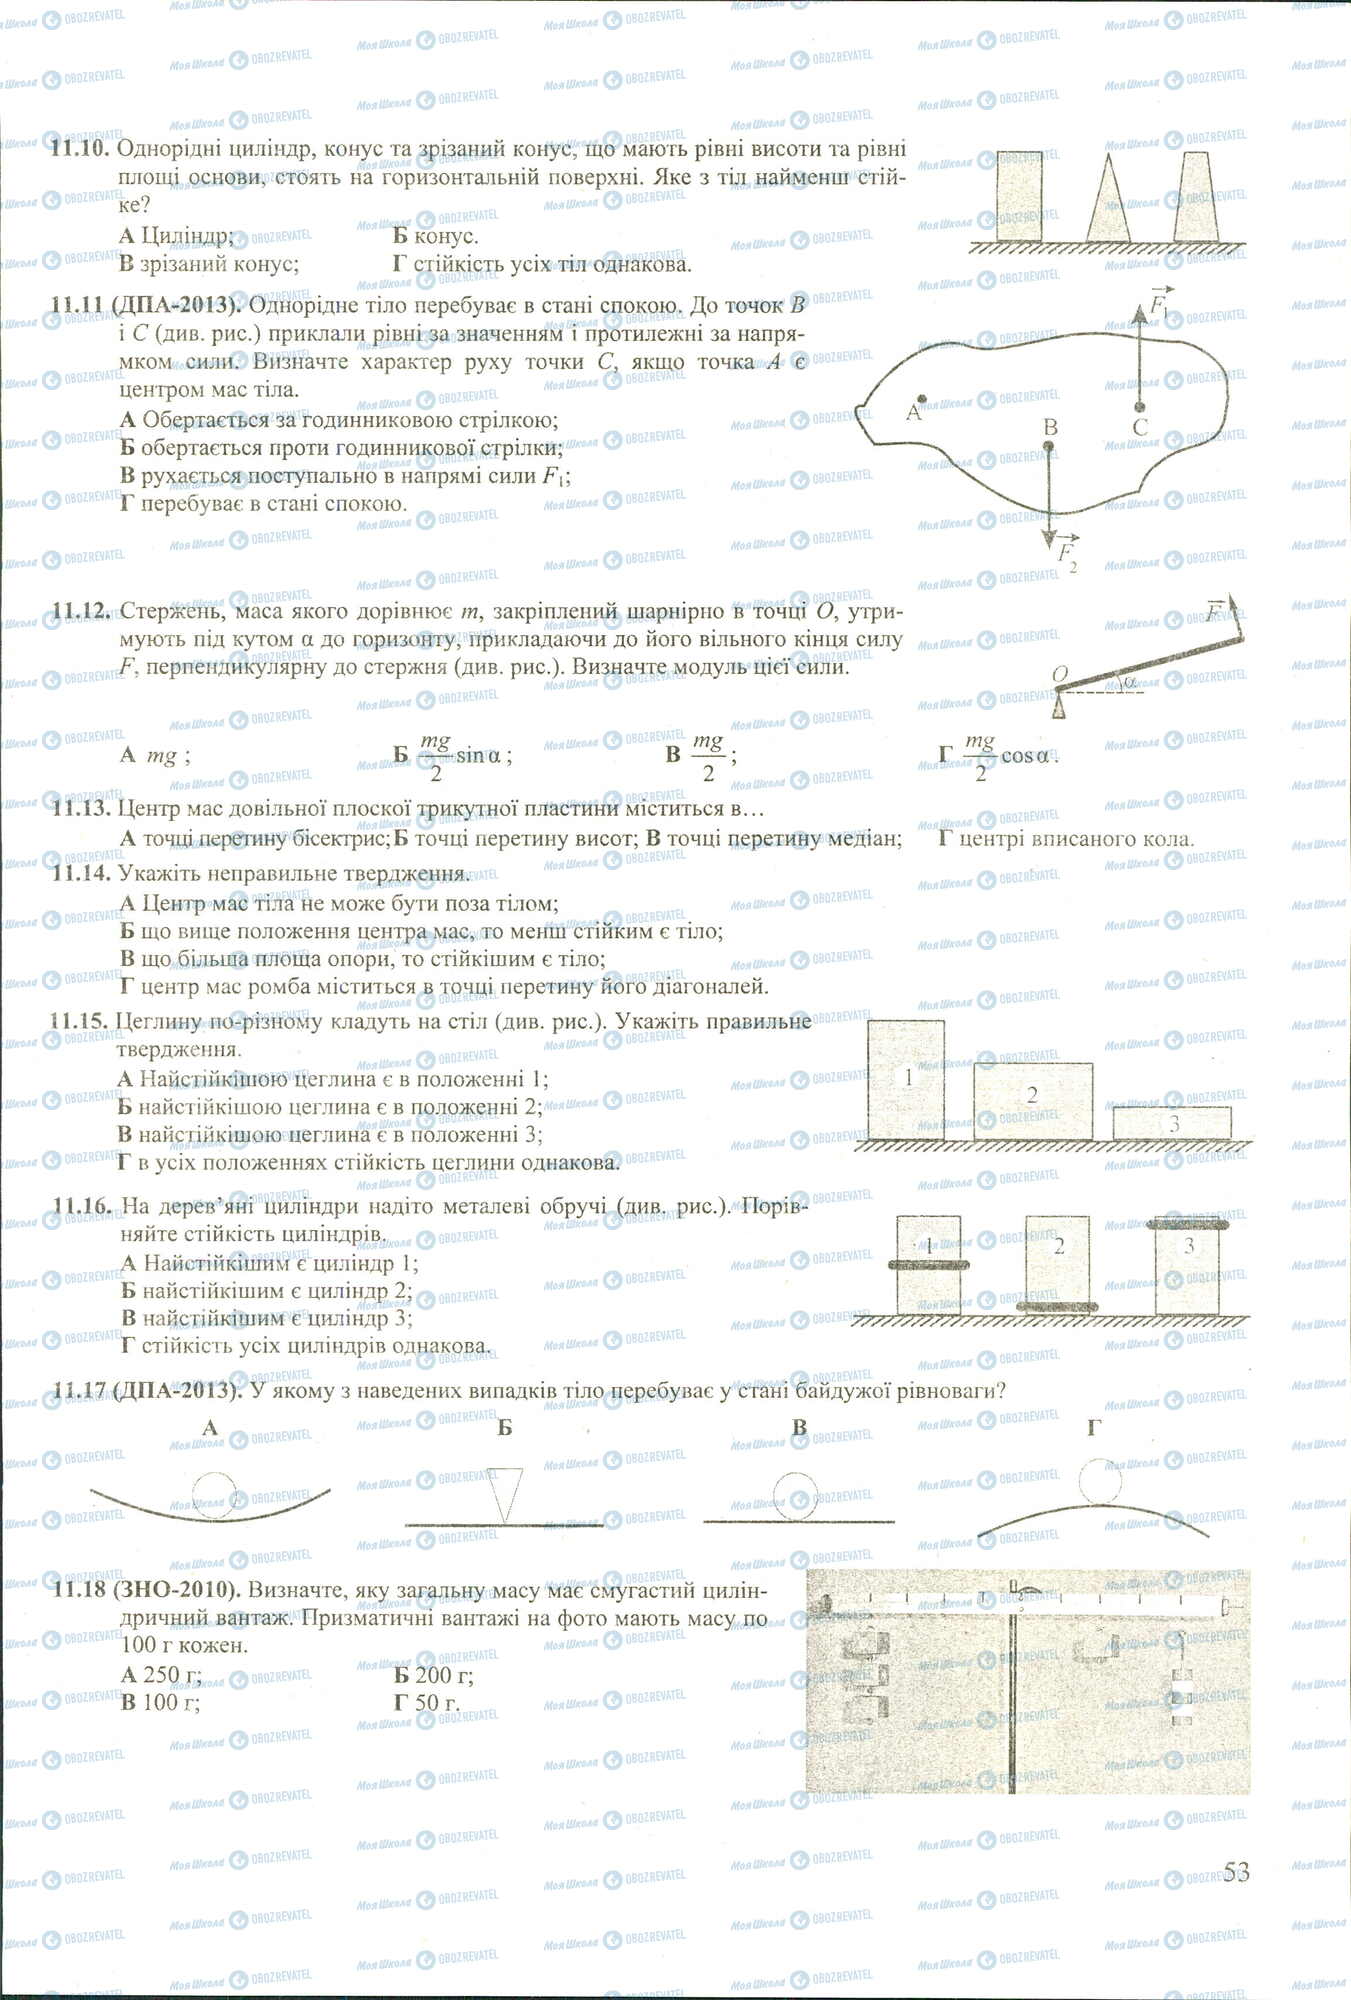 ЗНО Физика 11 класс страница 10-18